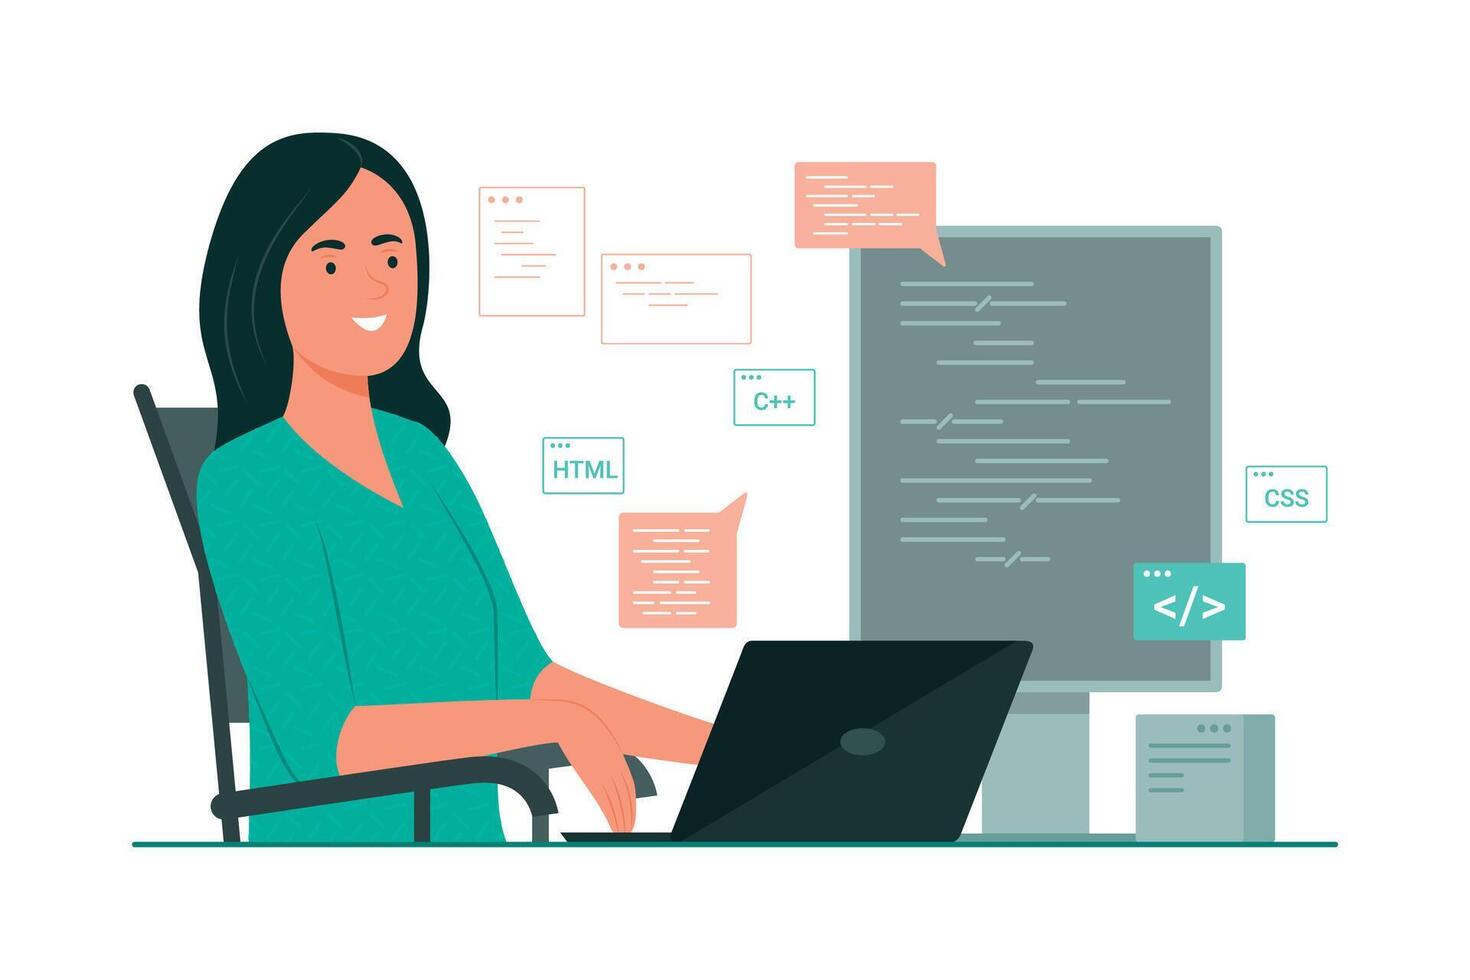 programador mulher processo codificação para Programas desenvolvimento conceito ilustração vetor